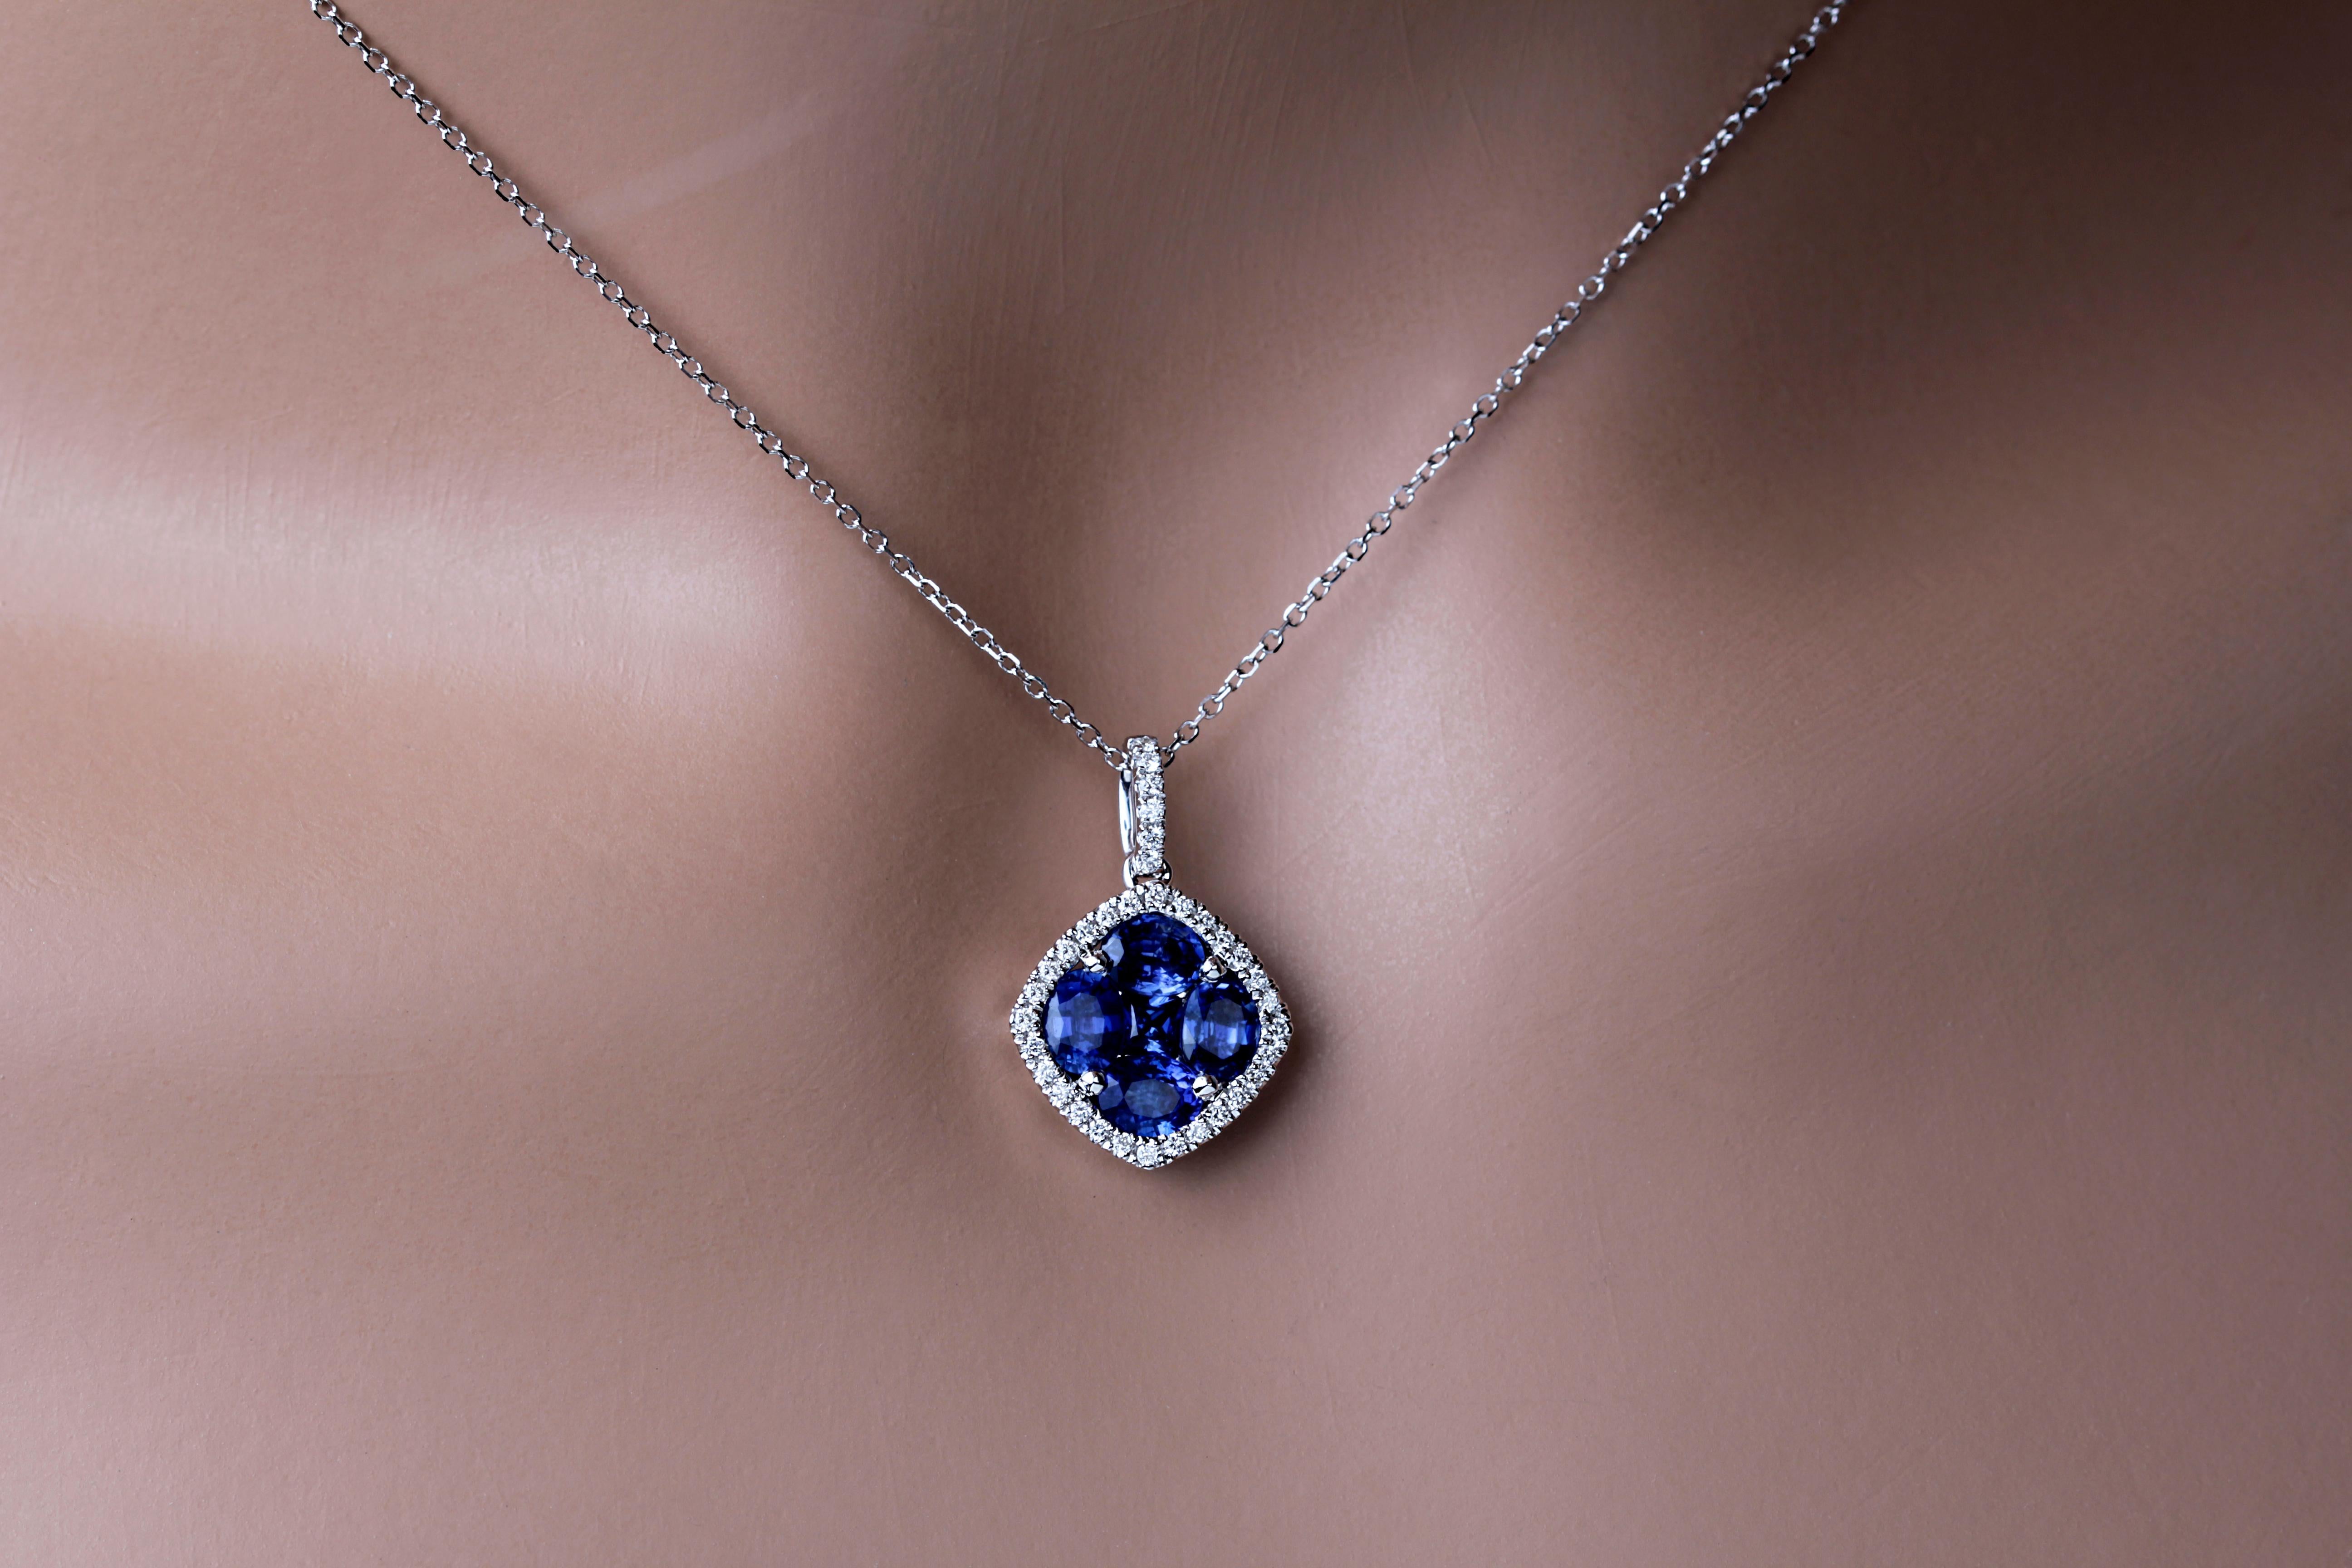 Lassen Sie sich von der Eleganz und Schönheit unseres Anhängers mit blauem Saphir und Diamanten verzaubern. Dieser Anhänger ist eine schillernde Verschmelzung von lebhaften Saphiren und funkelnden natürlichen Diamanten, die ein wirklich